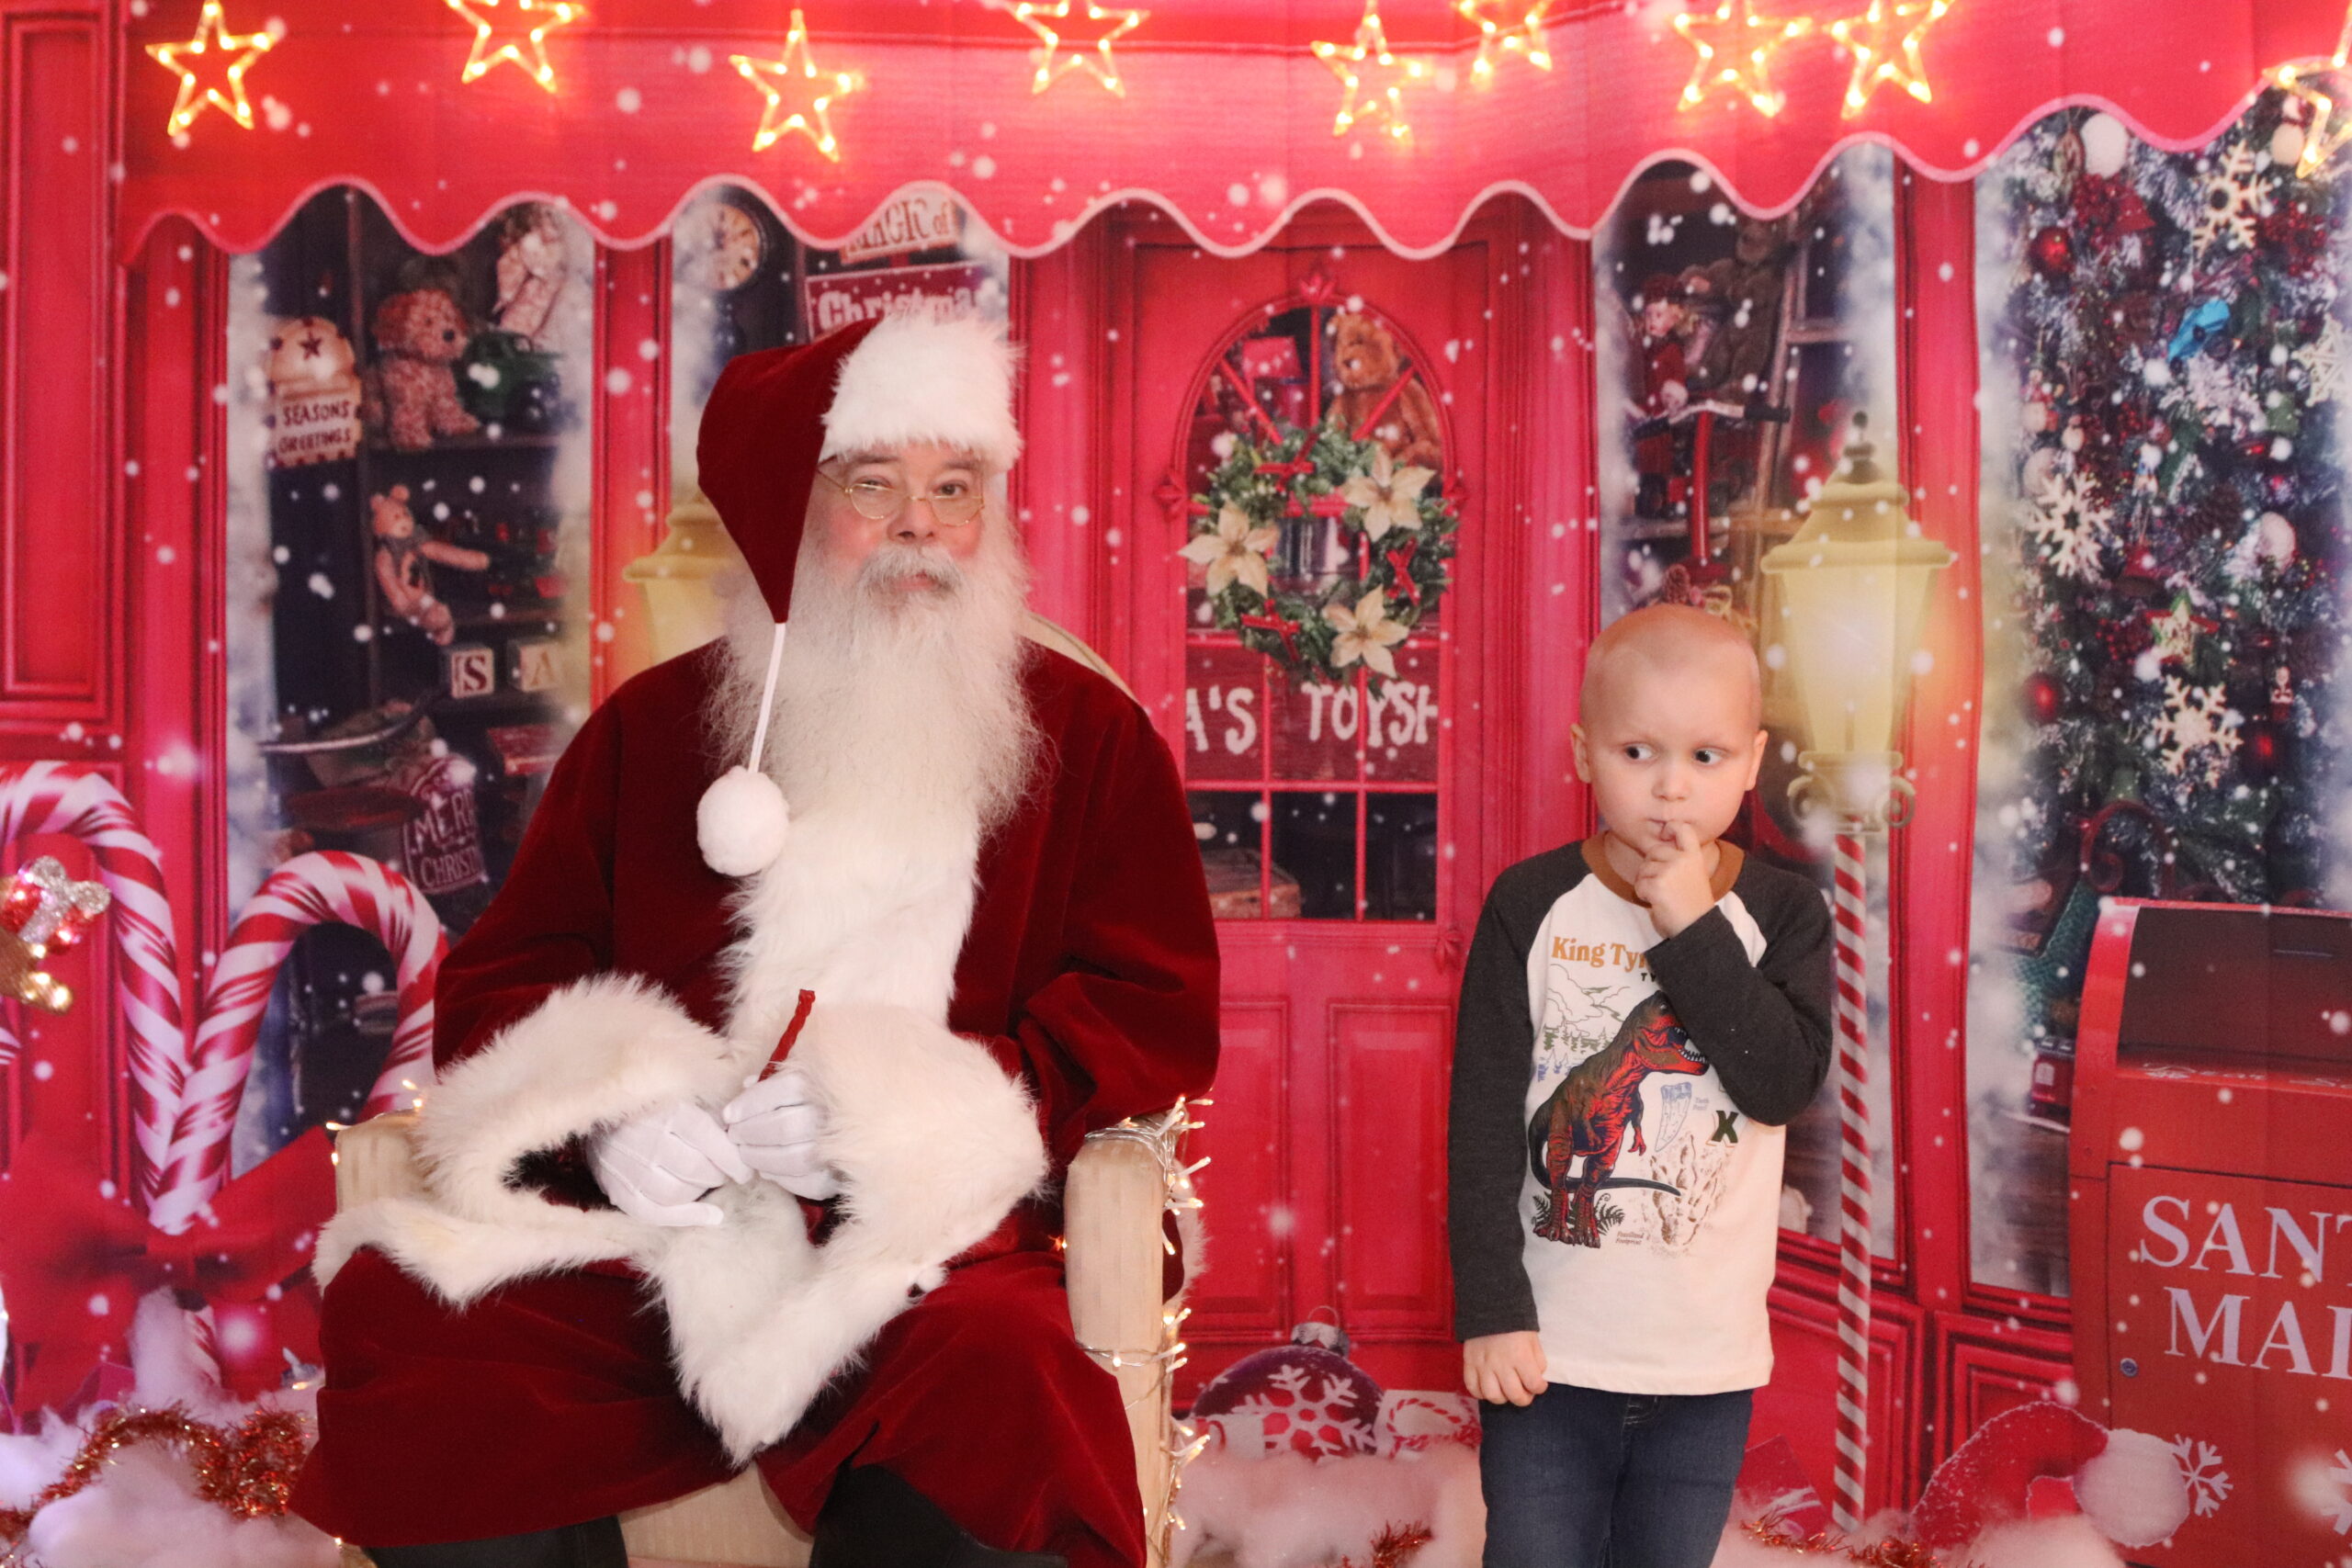 a little boy stands next to Santa